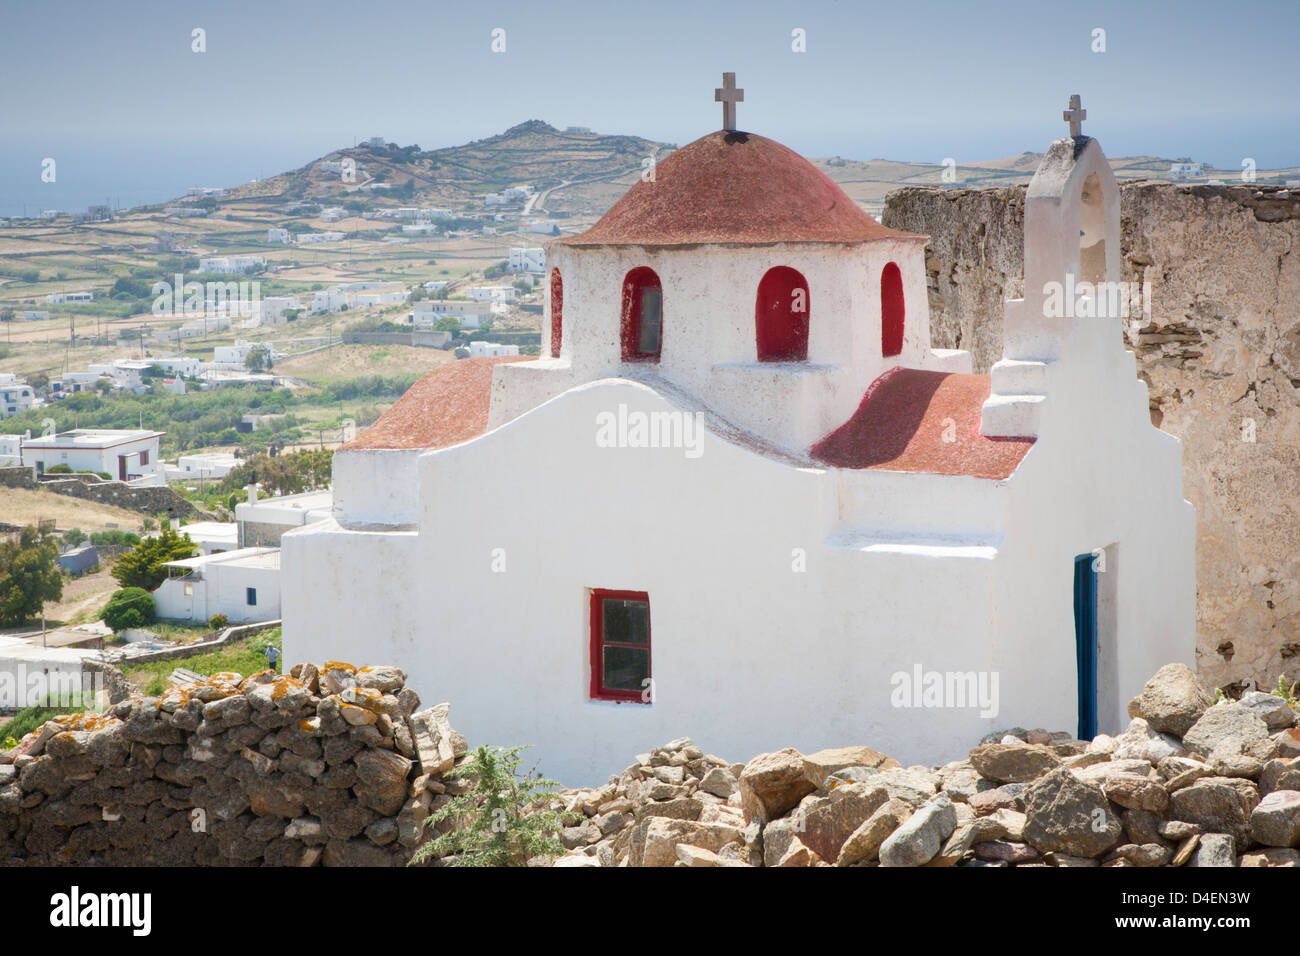 Chiesa a cupola rossa sulla cima di una collina che domina la campagna di Mykonos nelle isole greche Foto Stock